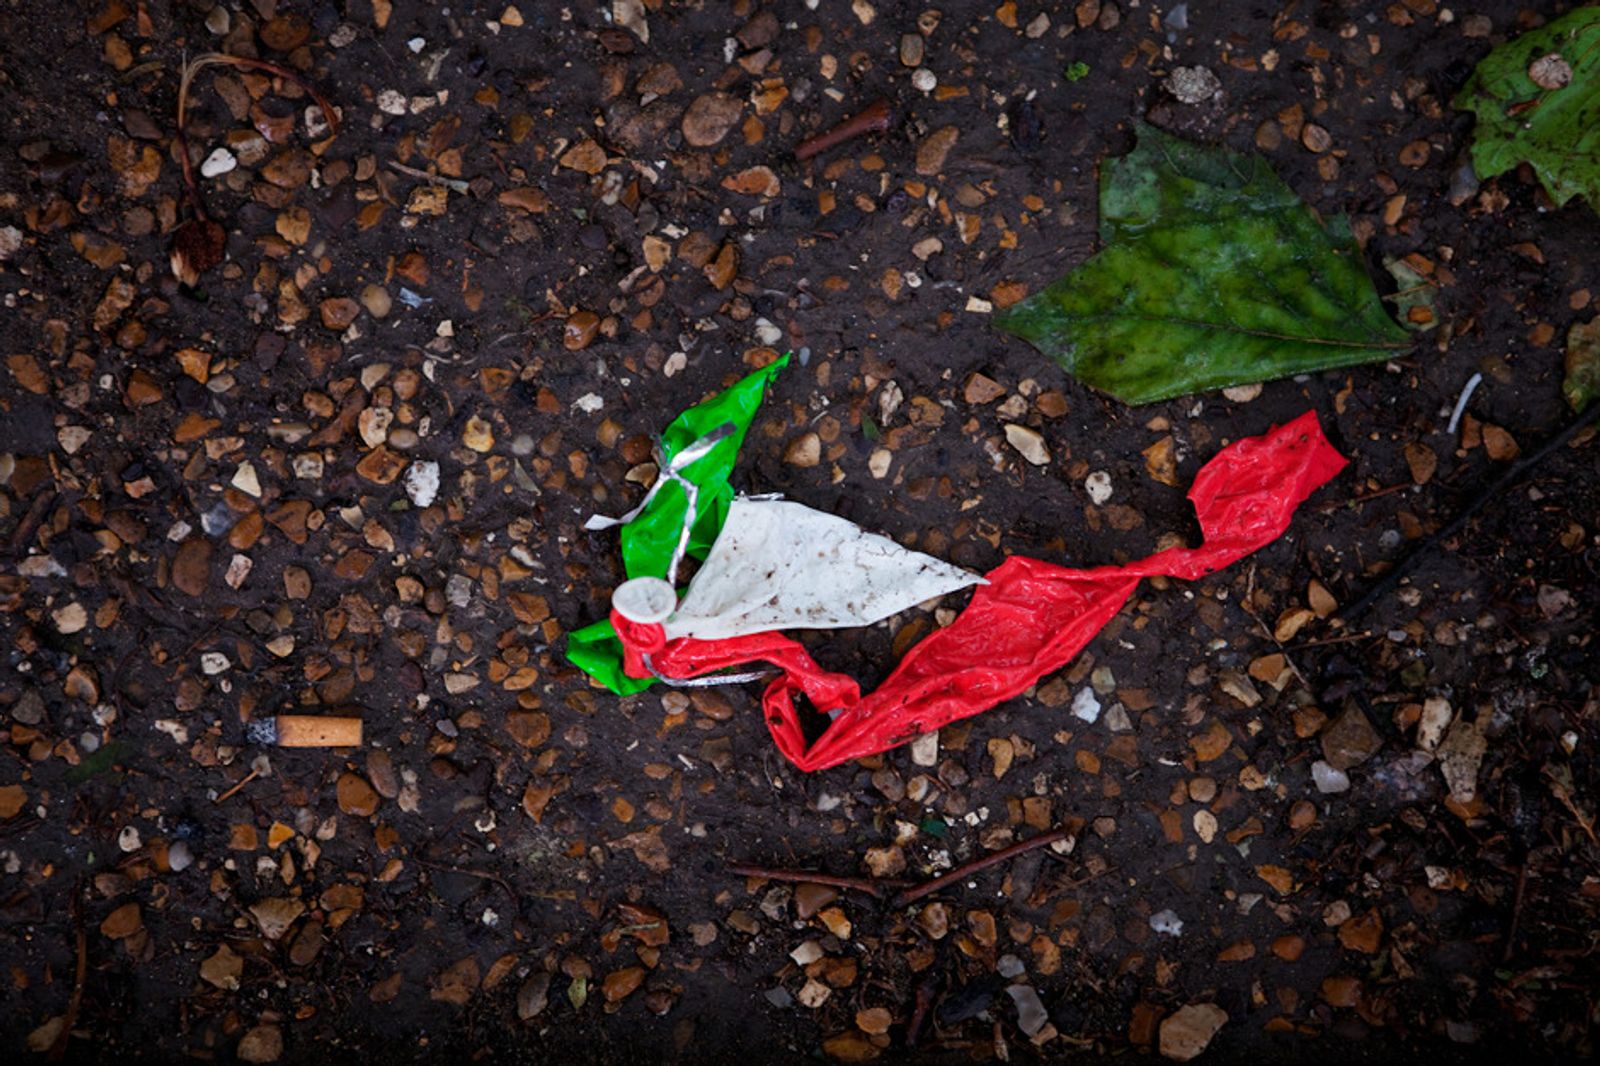 © Antonio Sansica - Italian flagged balloon during heavy rain.